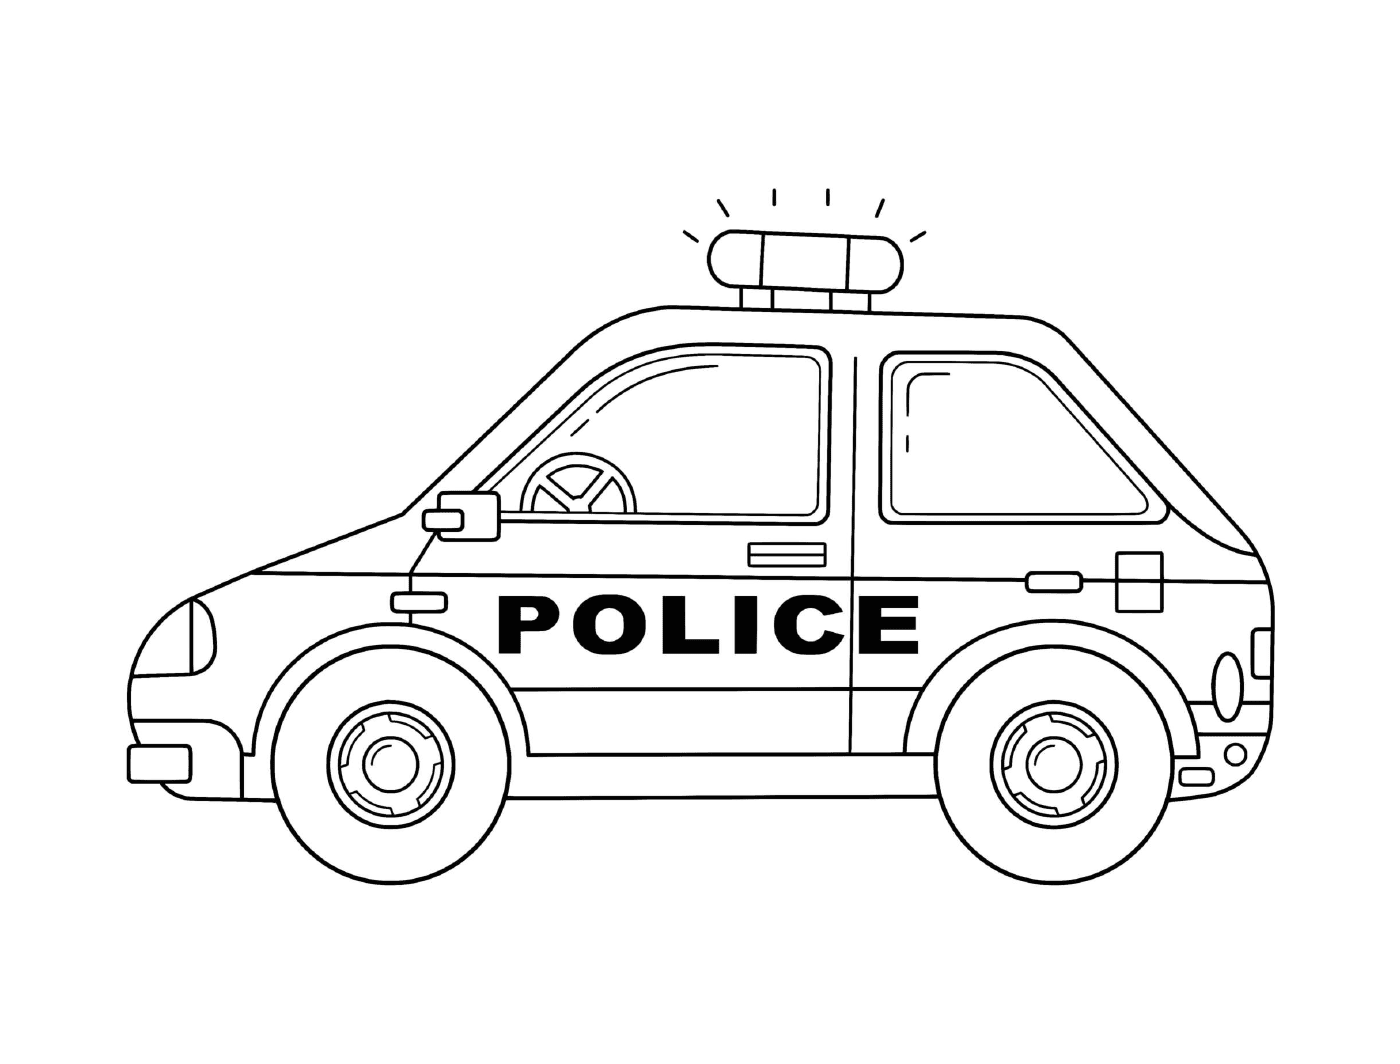  Автомобиль национальной полиции во Франции 